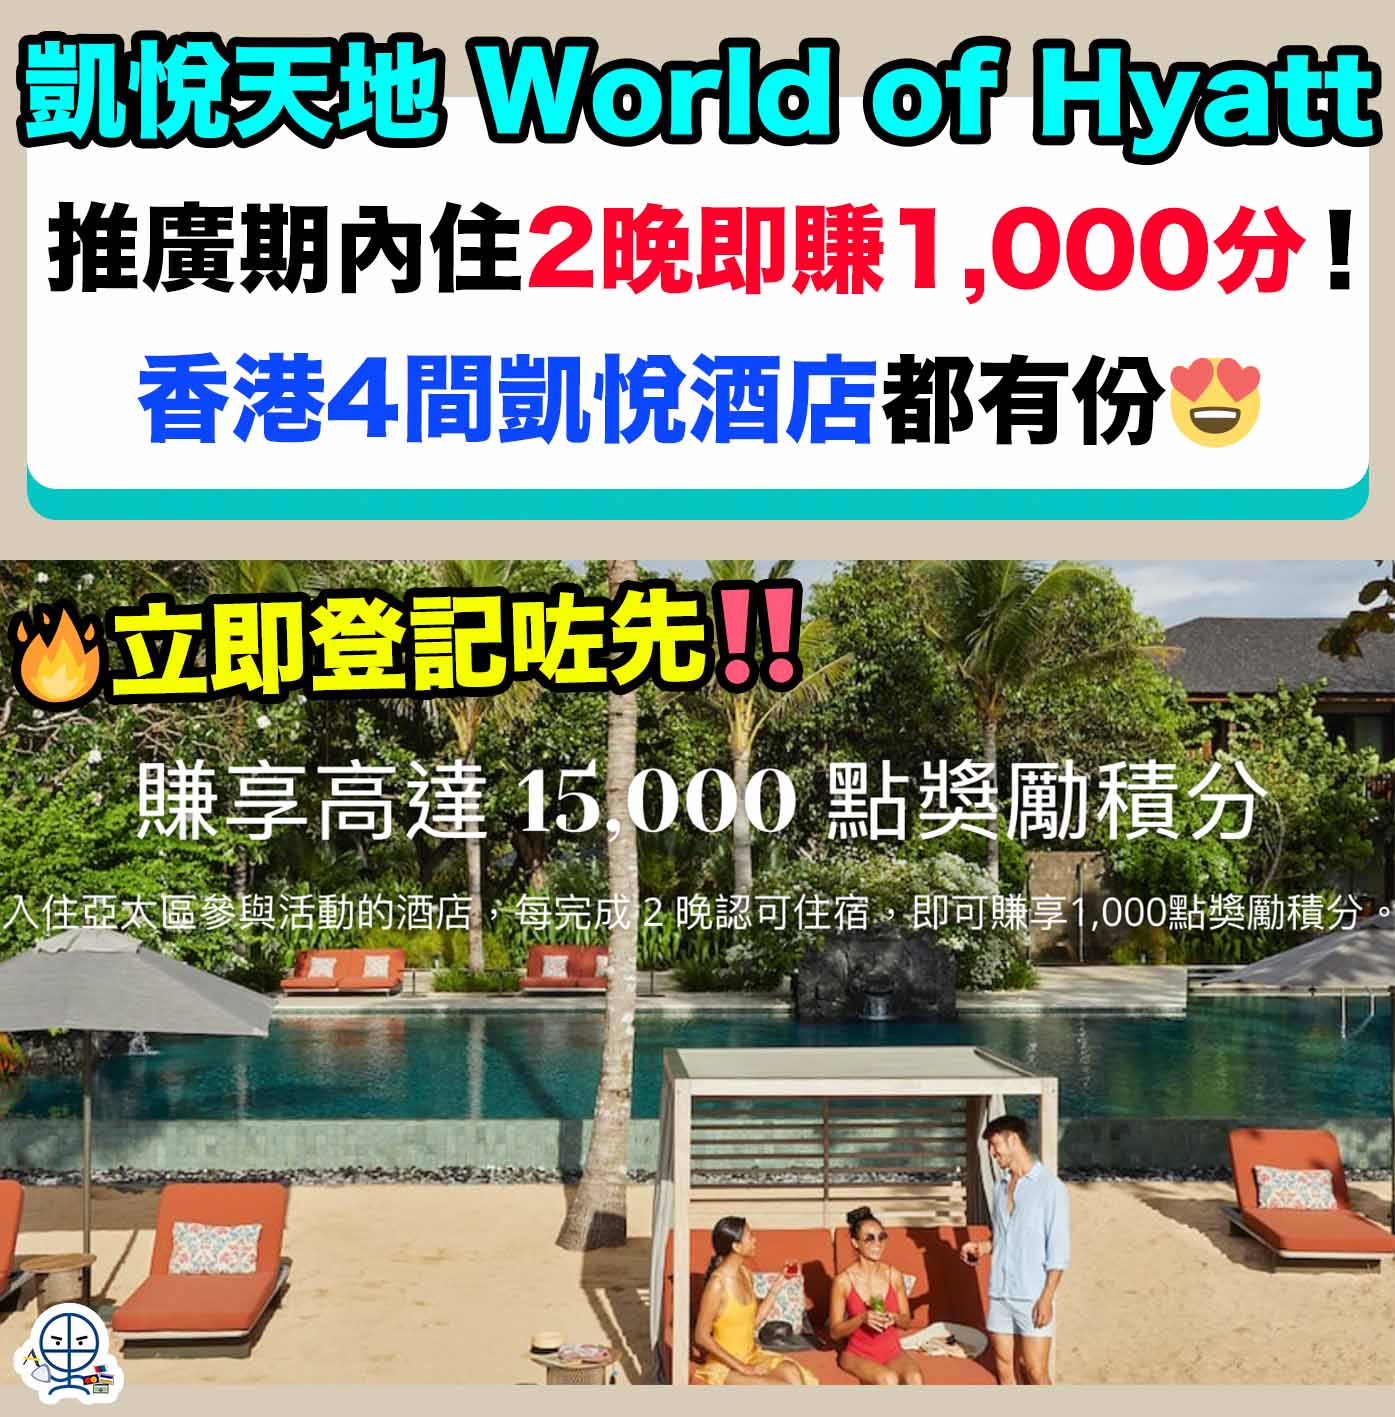 凱悅天地-World of Hyatt-staycation